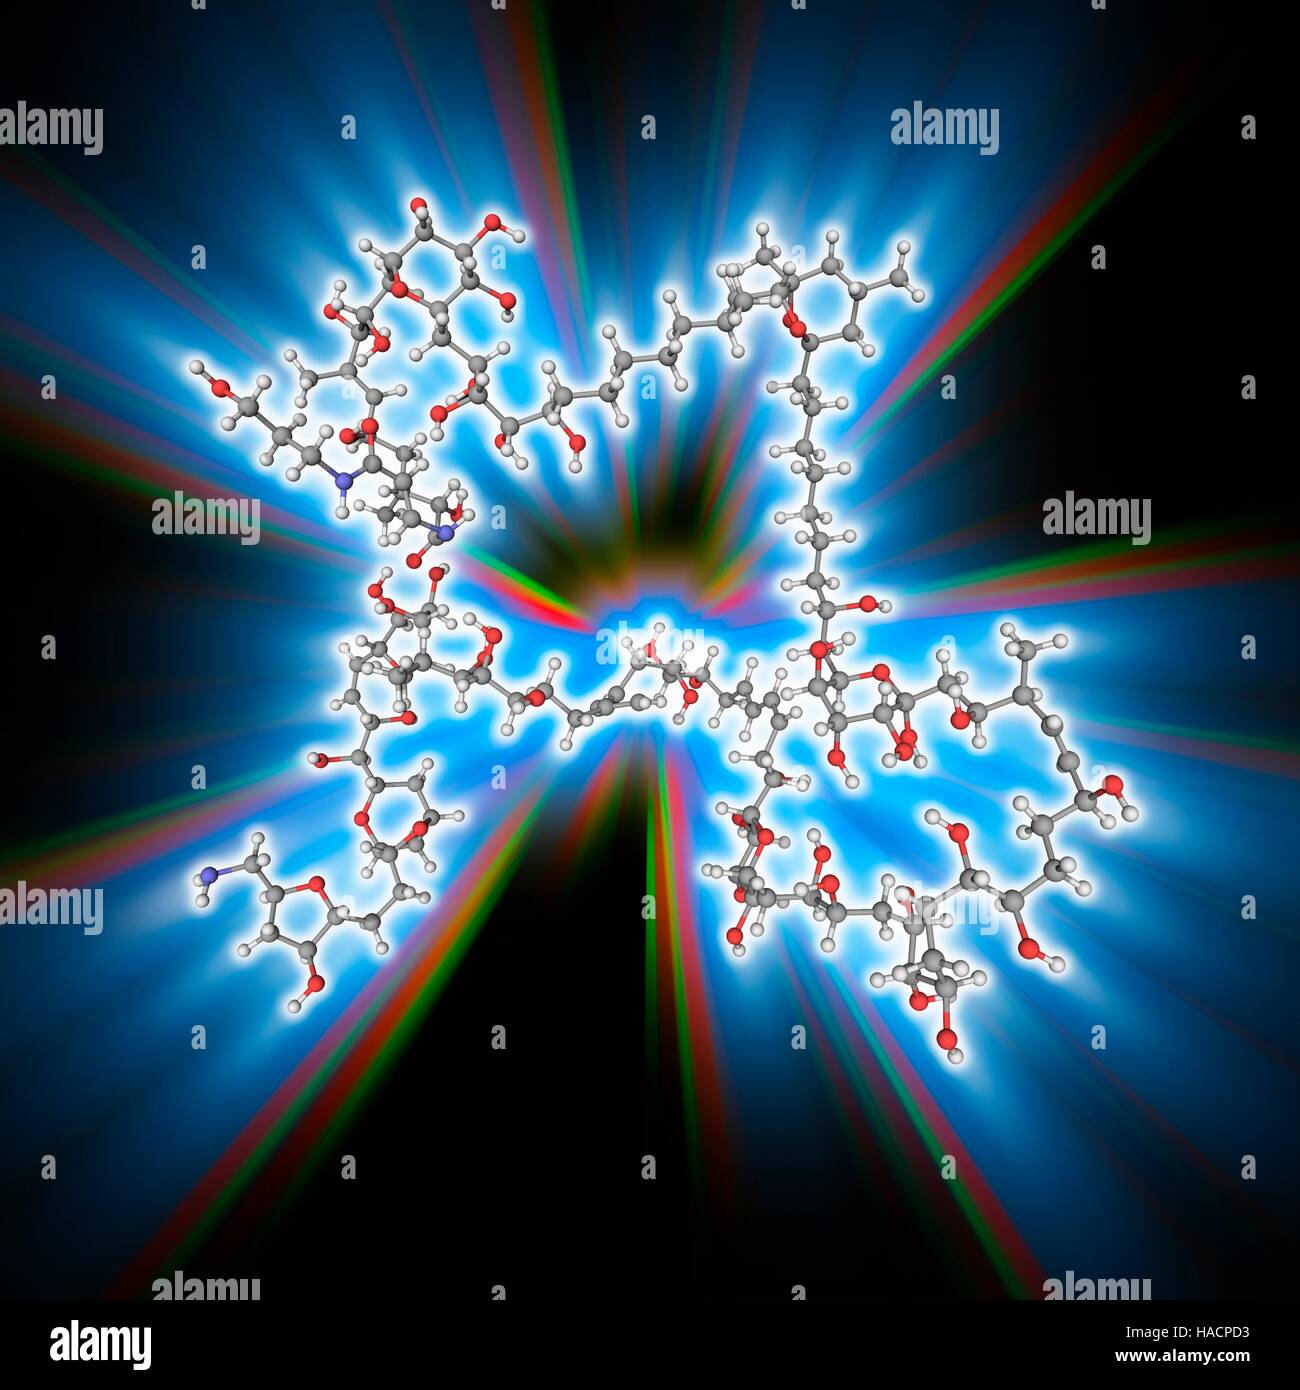 Palytoxin. Modelo molecular de la toxina palytoxin (C129.H223.N3.O54), producida por varias especies marinas. Es considerado uno de los más tóxicos sustancias no proteicas conocidas. Los átomos son representados como esferas y están codificados por color (gris): carbono, hidrógeno, nitrógeno (blanco) (azul) y oxígeno (rojo). Ilustración. Foto de stock